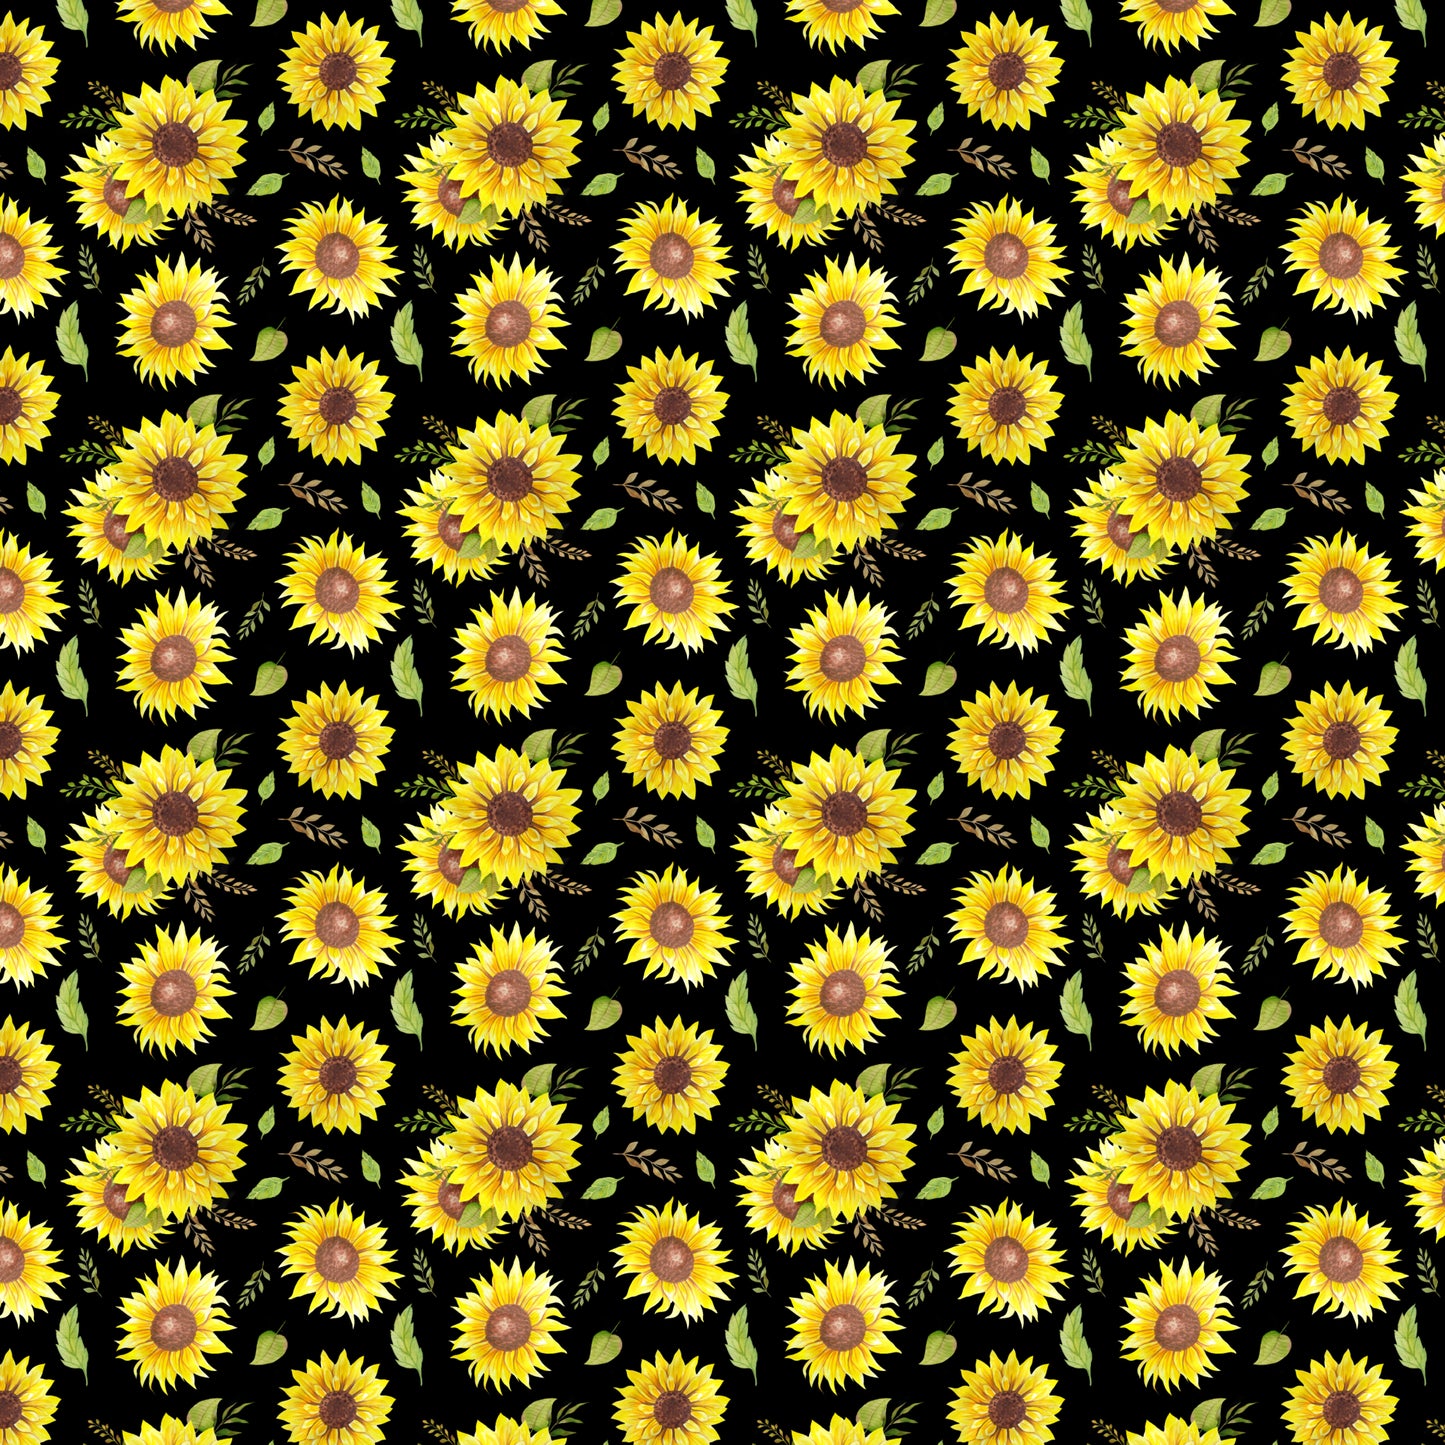 Sunflower 003 Vinyl Sheet